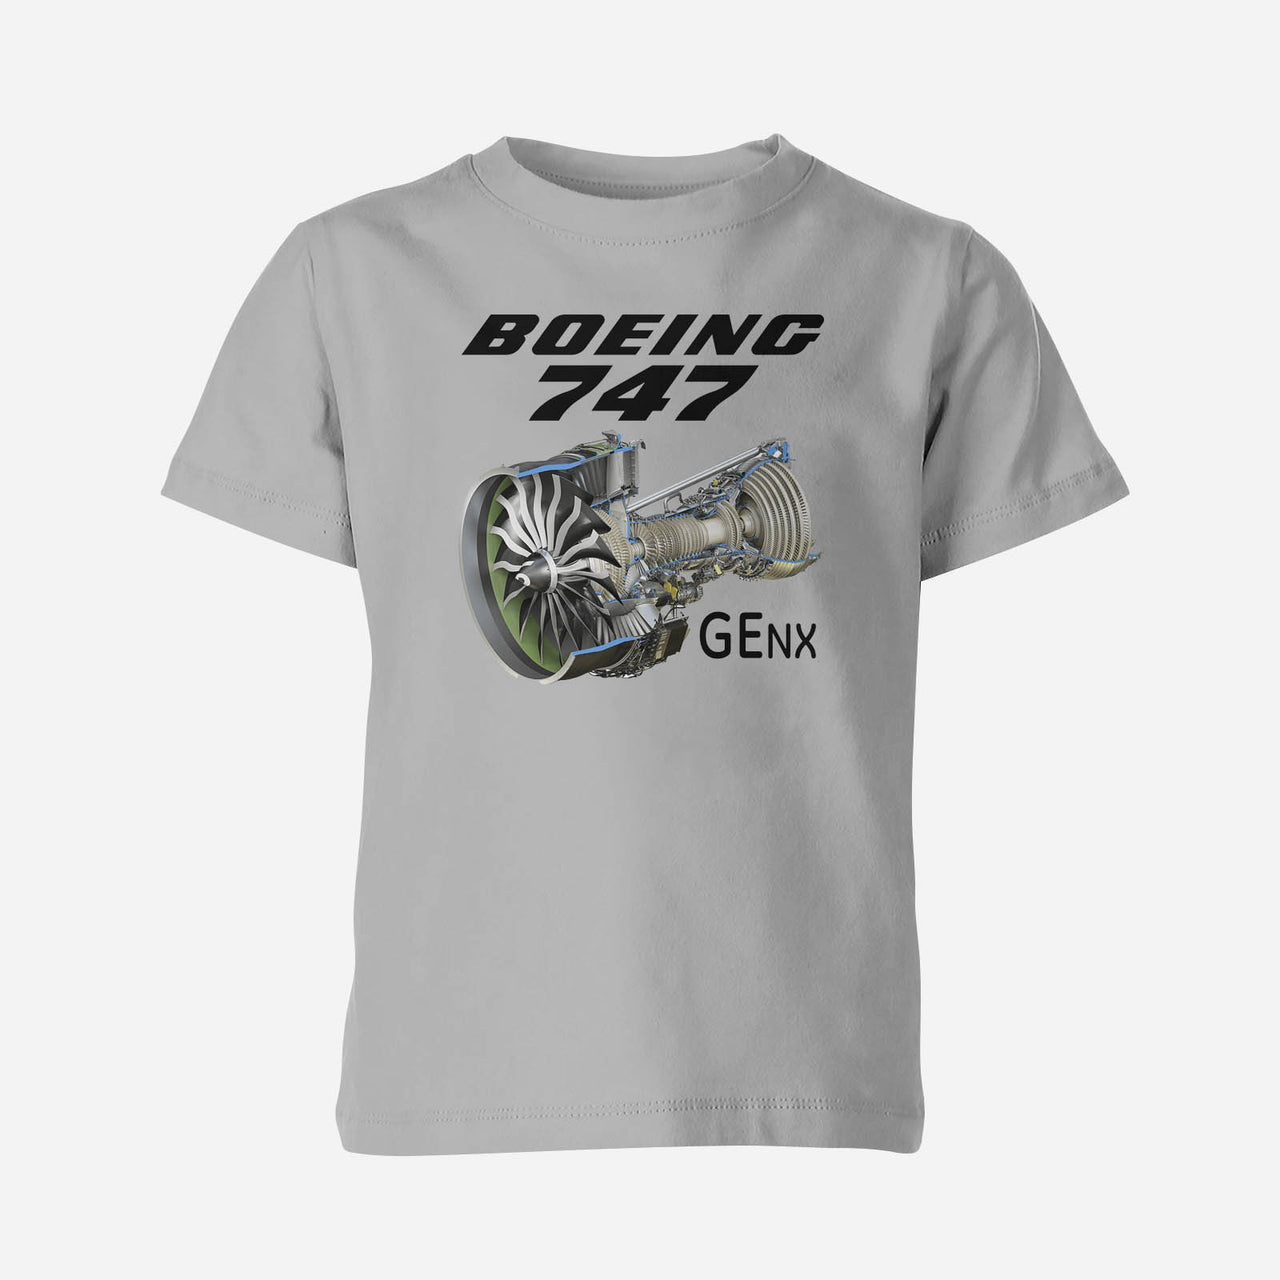 Boeing 747 & GENX Engine Designed Children T-Shirts